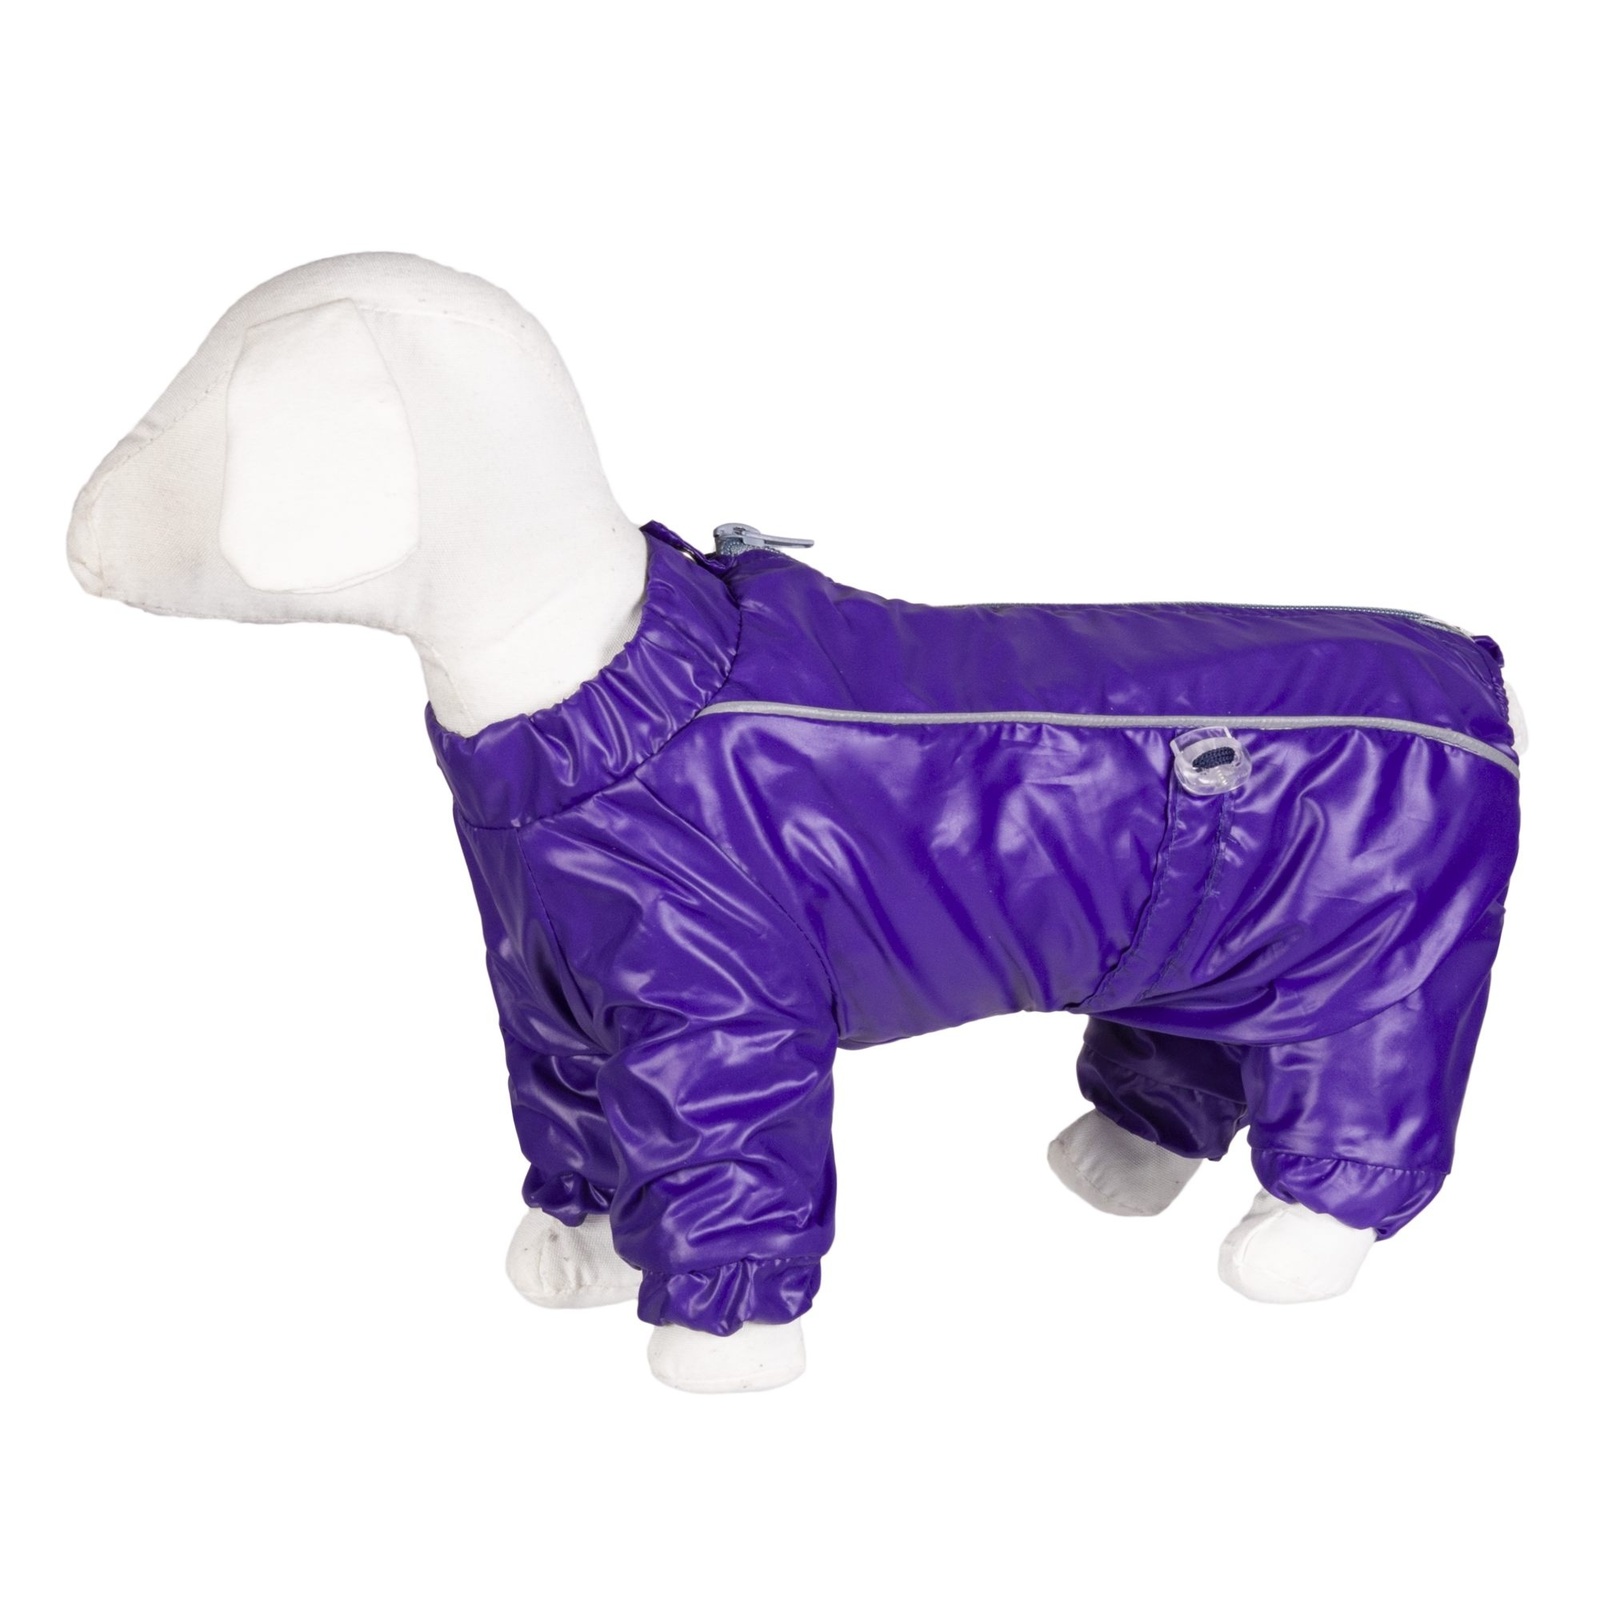 Yami-Yami одежда Yami-Yami одежда комбинезон для собак малых пород, фиолетовый на флисе (ХL/4) цена и фото